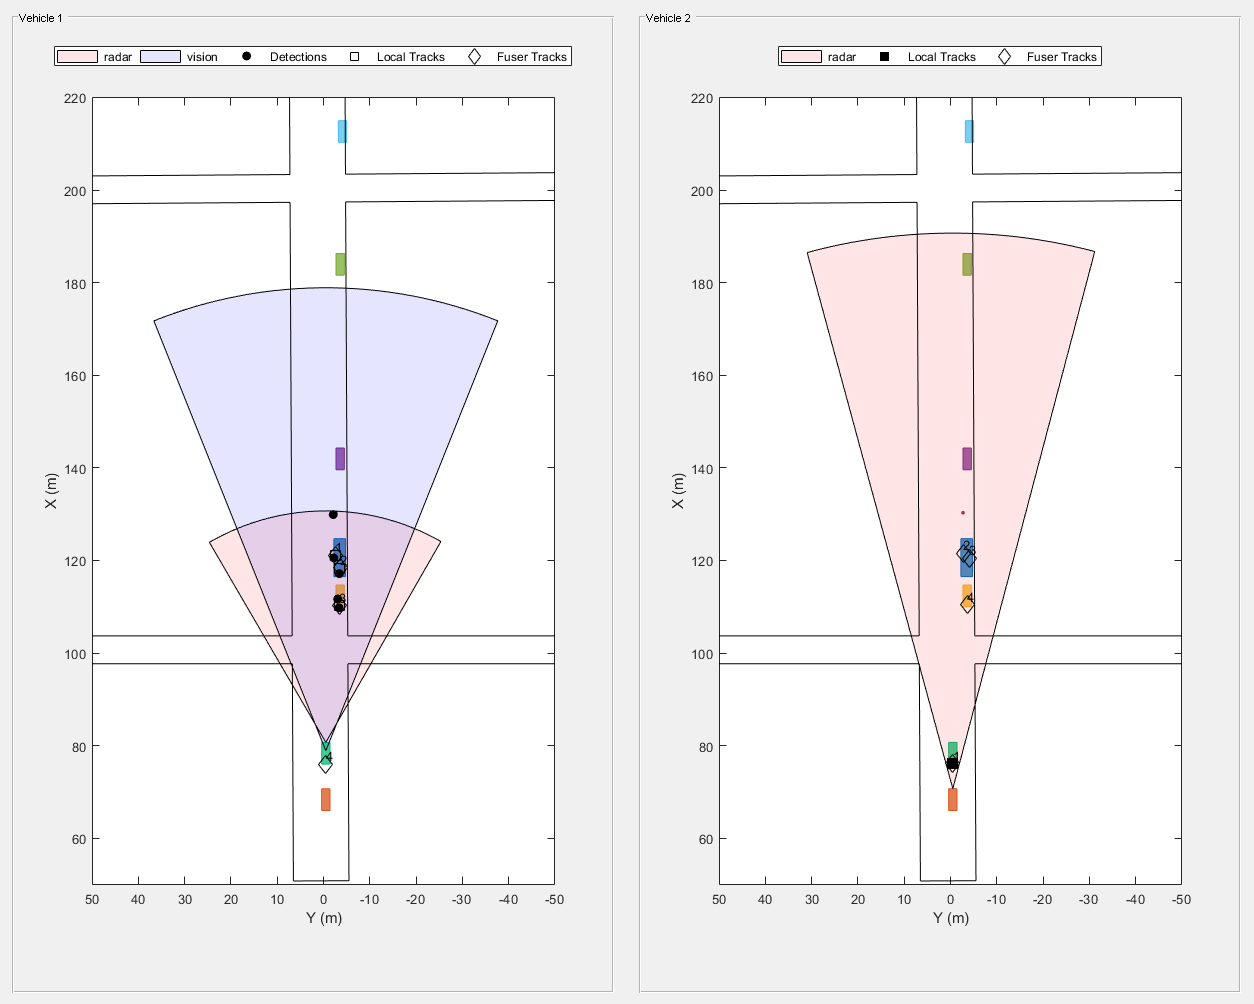 图Snap #1包含2个轴对象和其他uipanel类型的对象。坐标轴对象1与xlabel X (m)， ylabel Y (m)包含9个类型为patch, line, text的对象。其中一条或多条线仅使用标记显示其值。这些对象表示雷达、视觉、探测、本地轨迹、Fuser轨迹。坐标轴对象2与xlabel X (m)， ylabel Y (m)包含7个类型为patch, line, text的对象。其中一条或多条线仅使用标记显示其值。这些对象表示雷达、本地轨迹、Fuser轨迹。